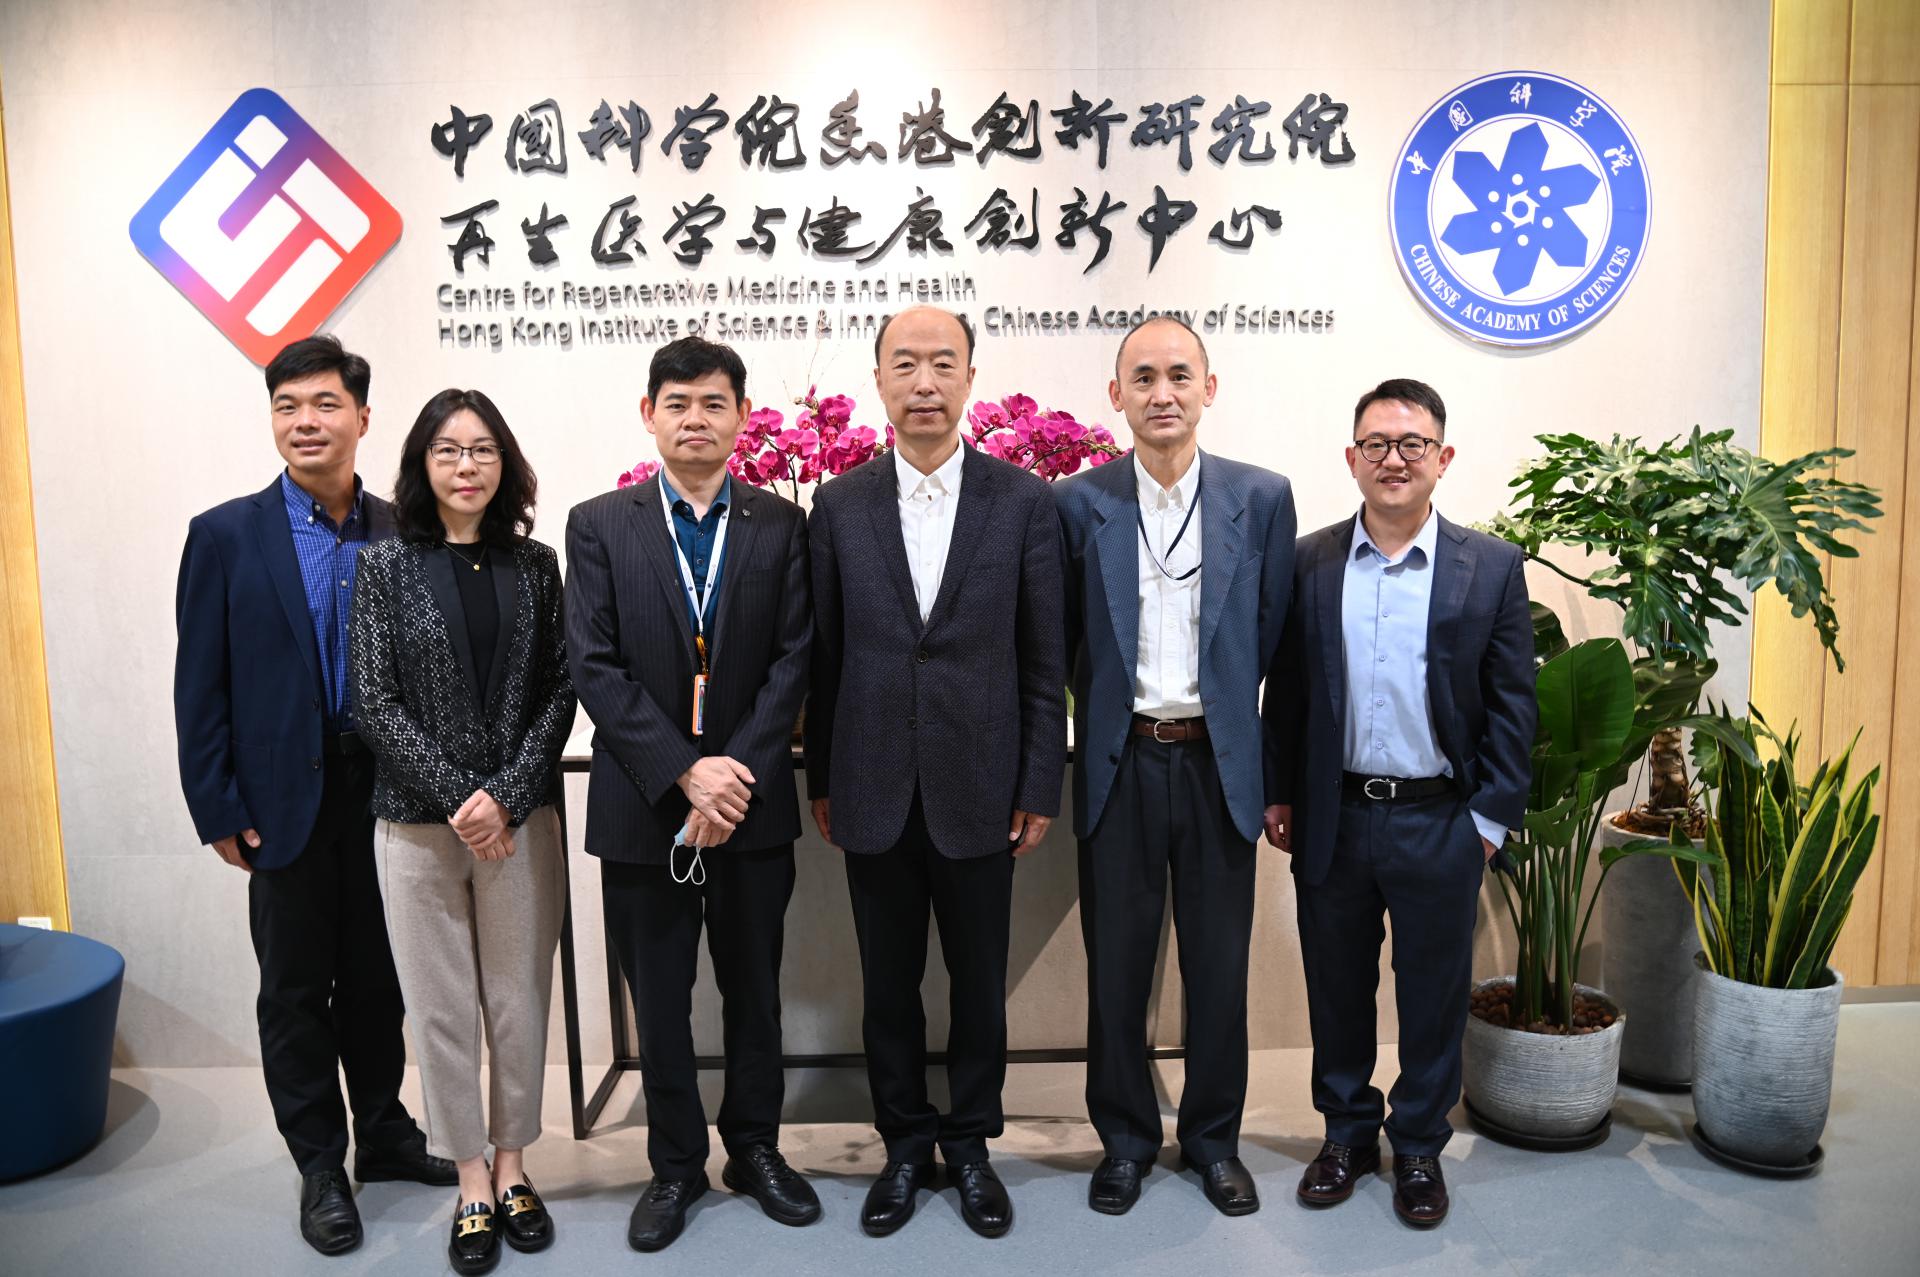 中国科学院国际合作局副局长刘卫东一行调研创新中心